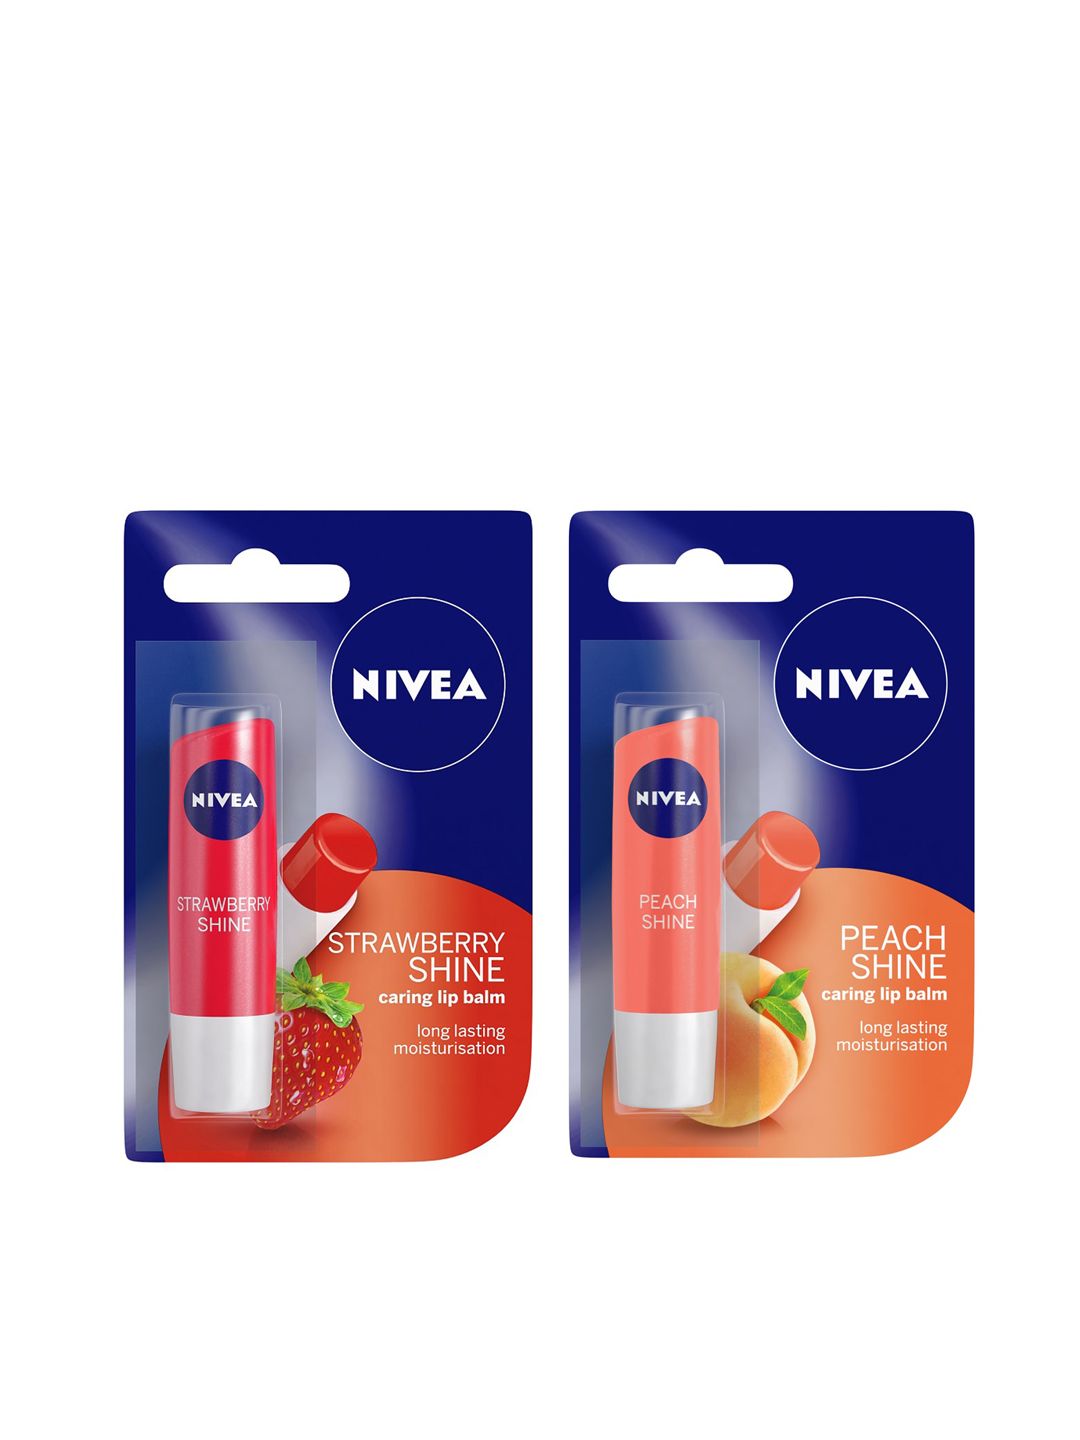 Nivea Set of Strawberry Shine & Peach Shine Caring Lip Balms Price in India